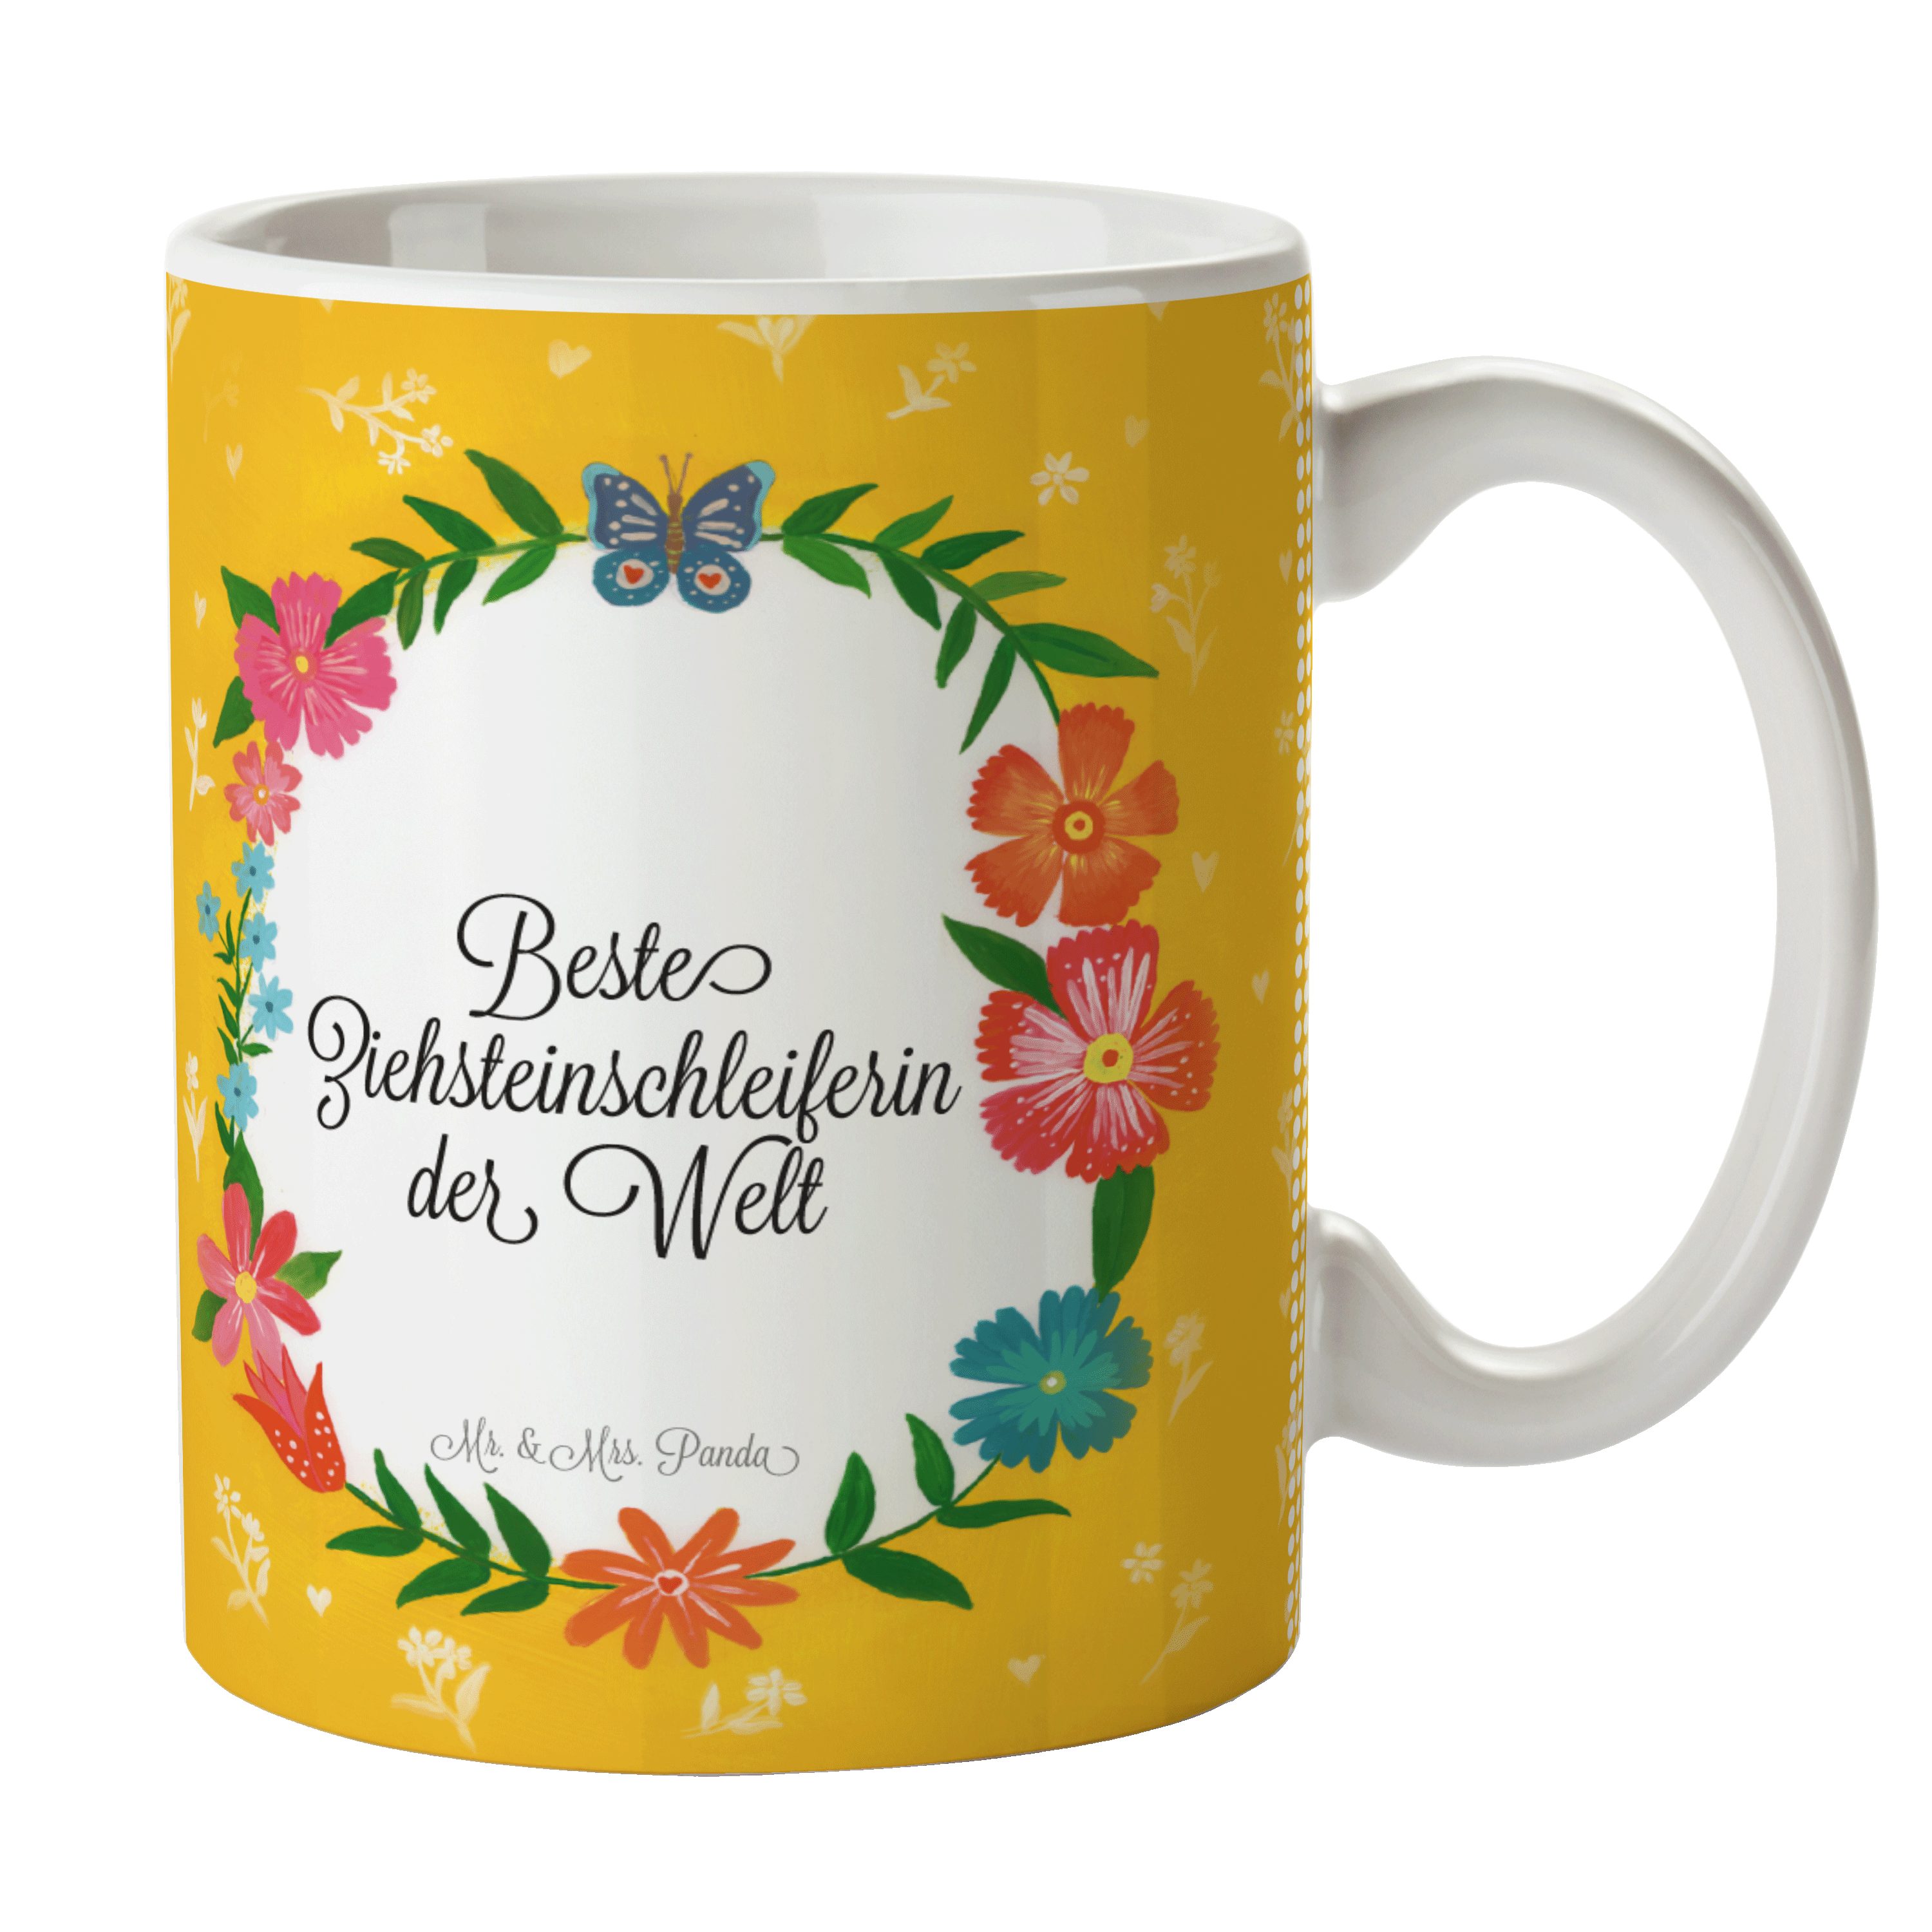 G, Panda Diplom, Geschenk, & Keramik Tasse Mrs. Mr. Kaffeetasse, - Kaffeebecher, Ziehsteinschleiferin